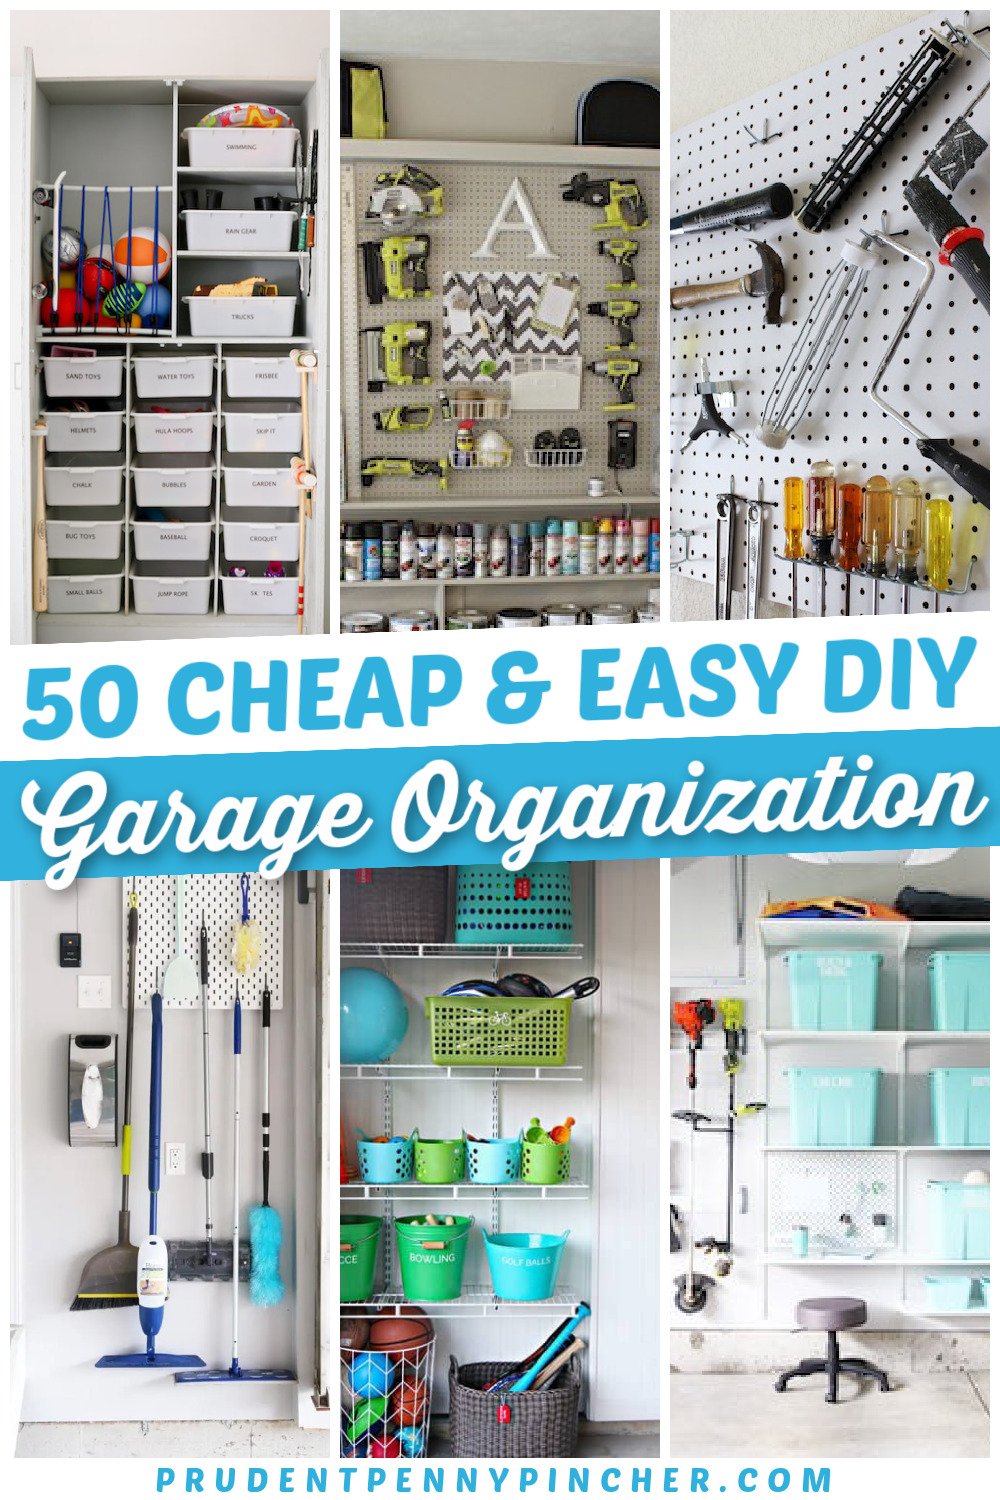 Garage Organization Ideas, Organize Garage Ideas Pictures